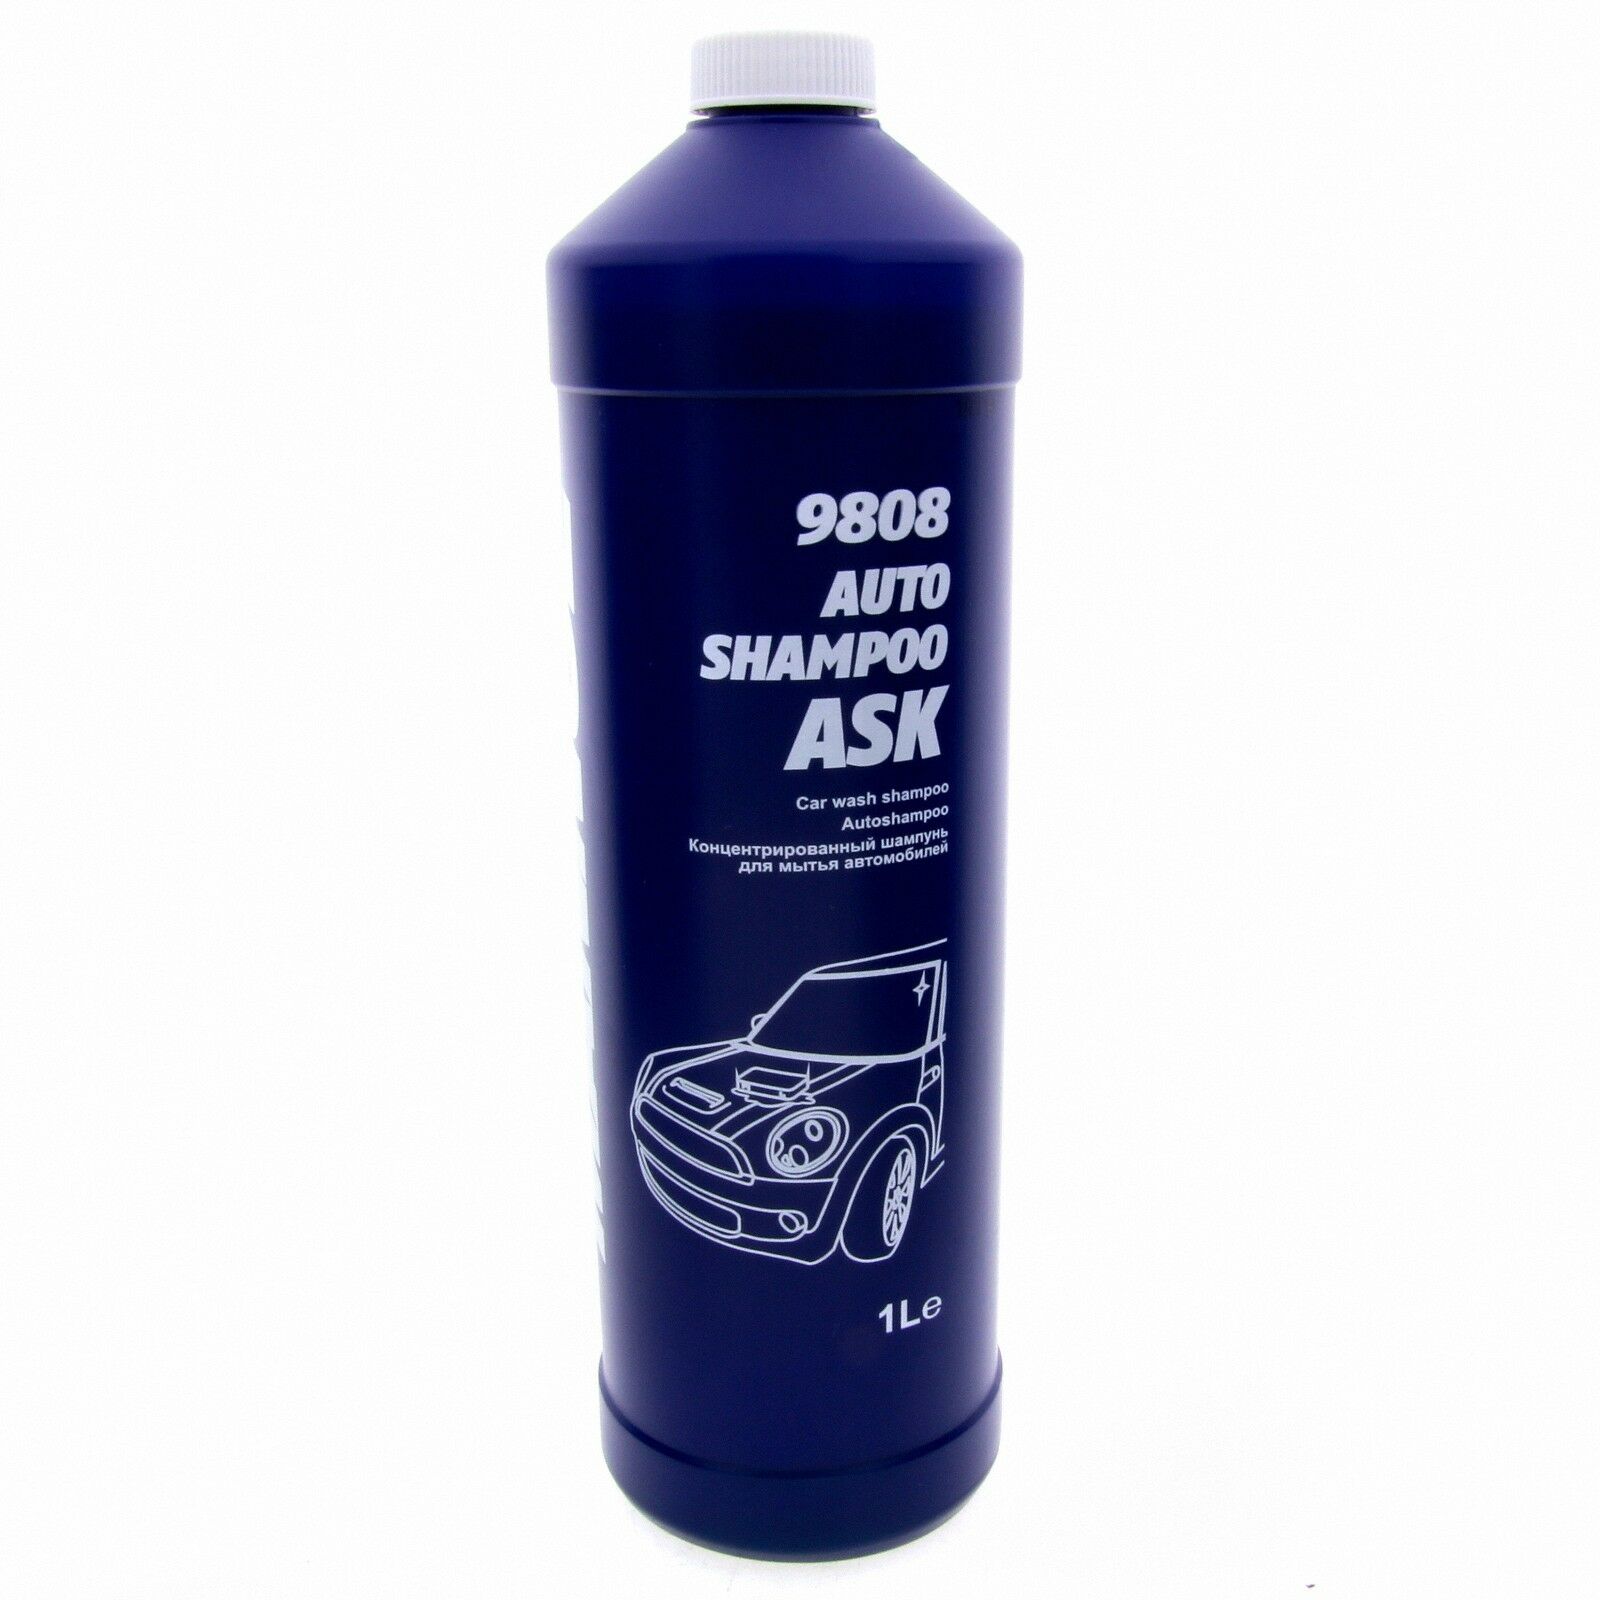 MANNOL 9808 Auto Shampoo ASK Reinigungsmittel Autowäsche Glanz Wäsche